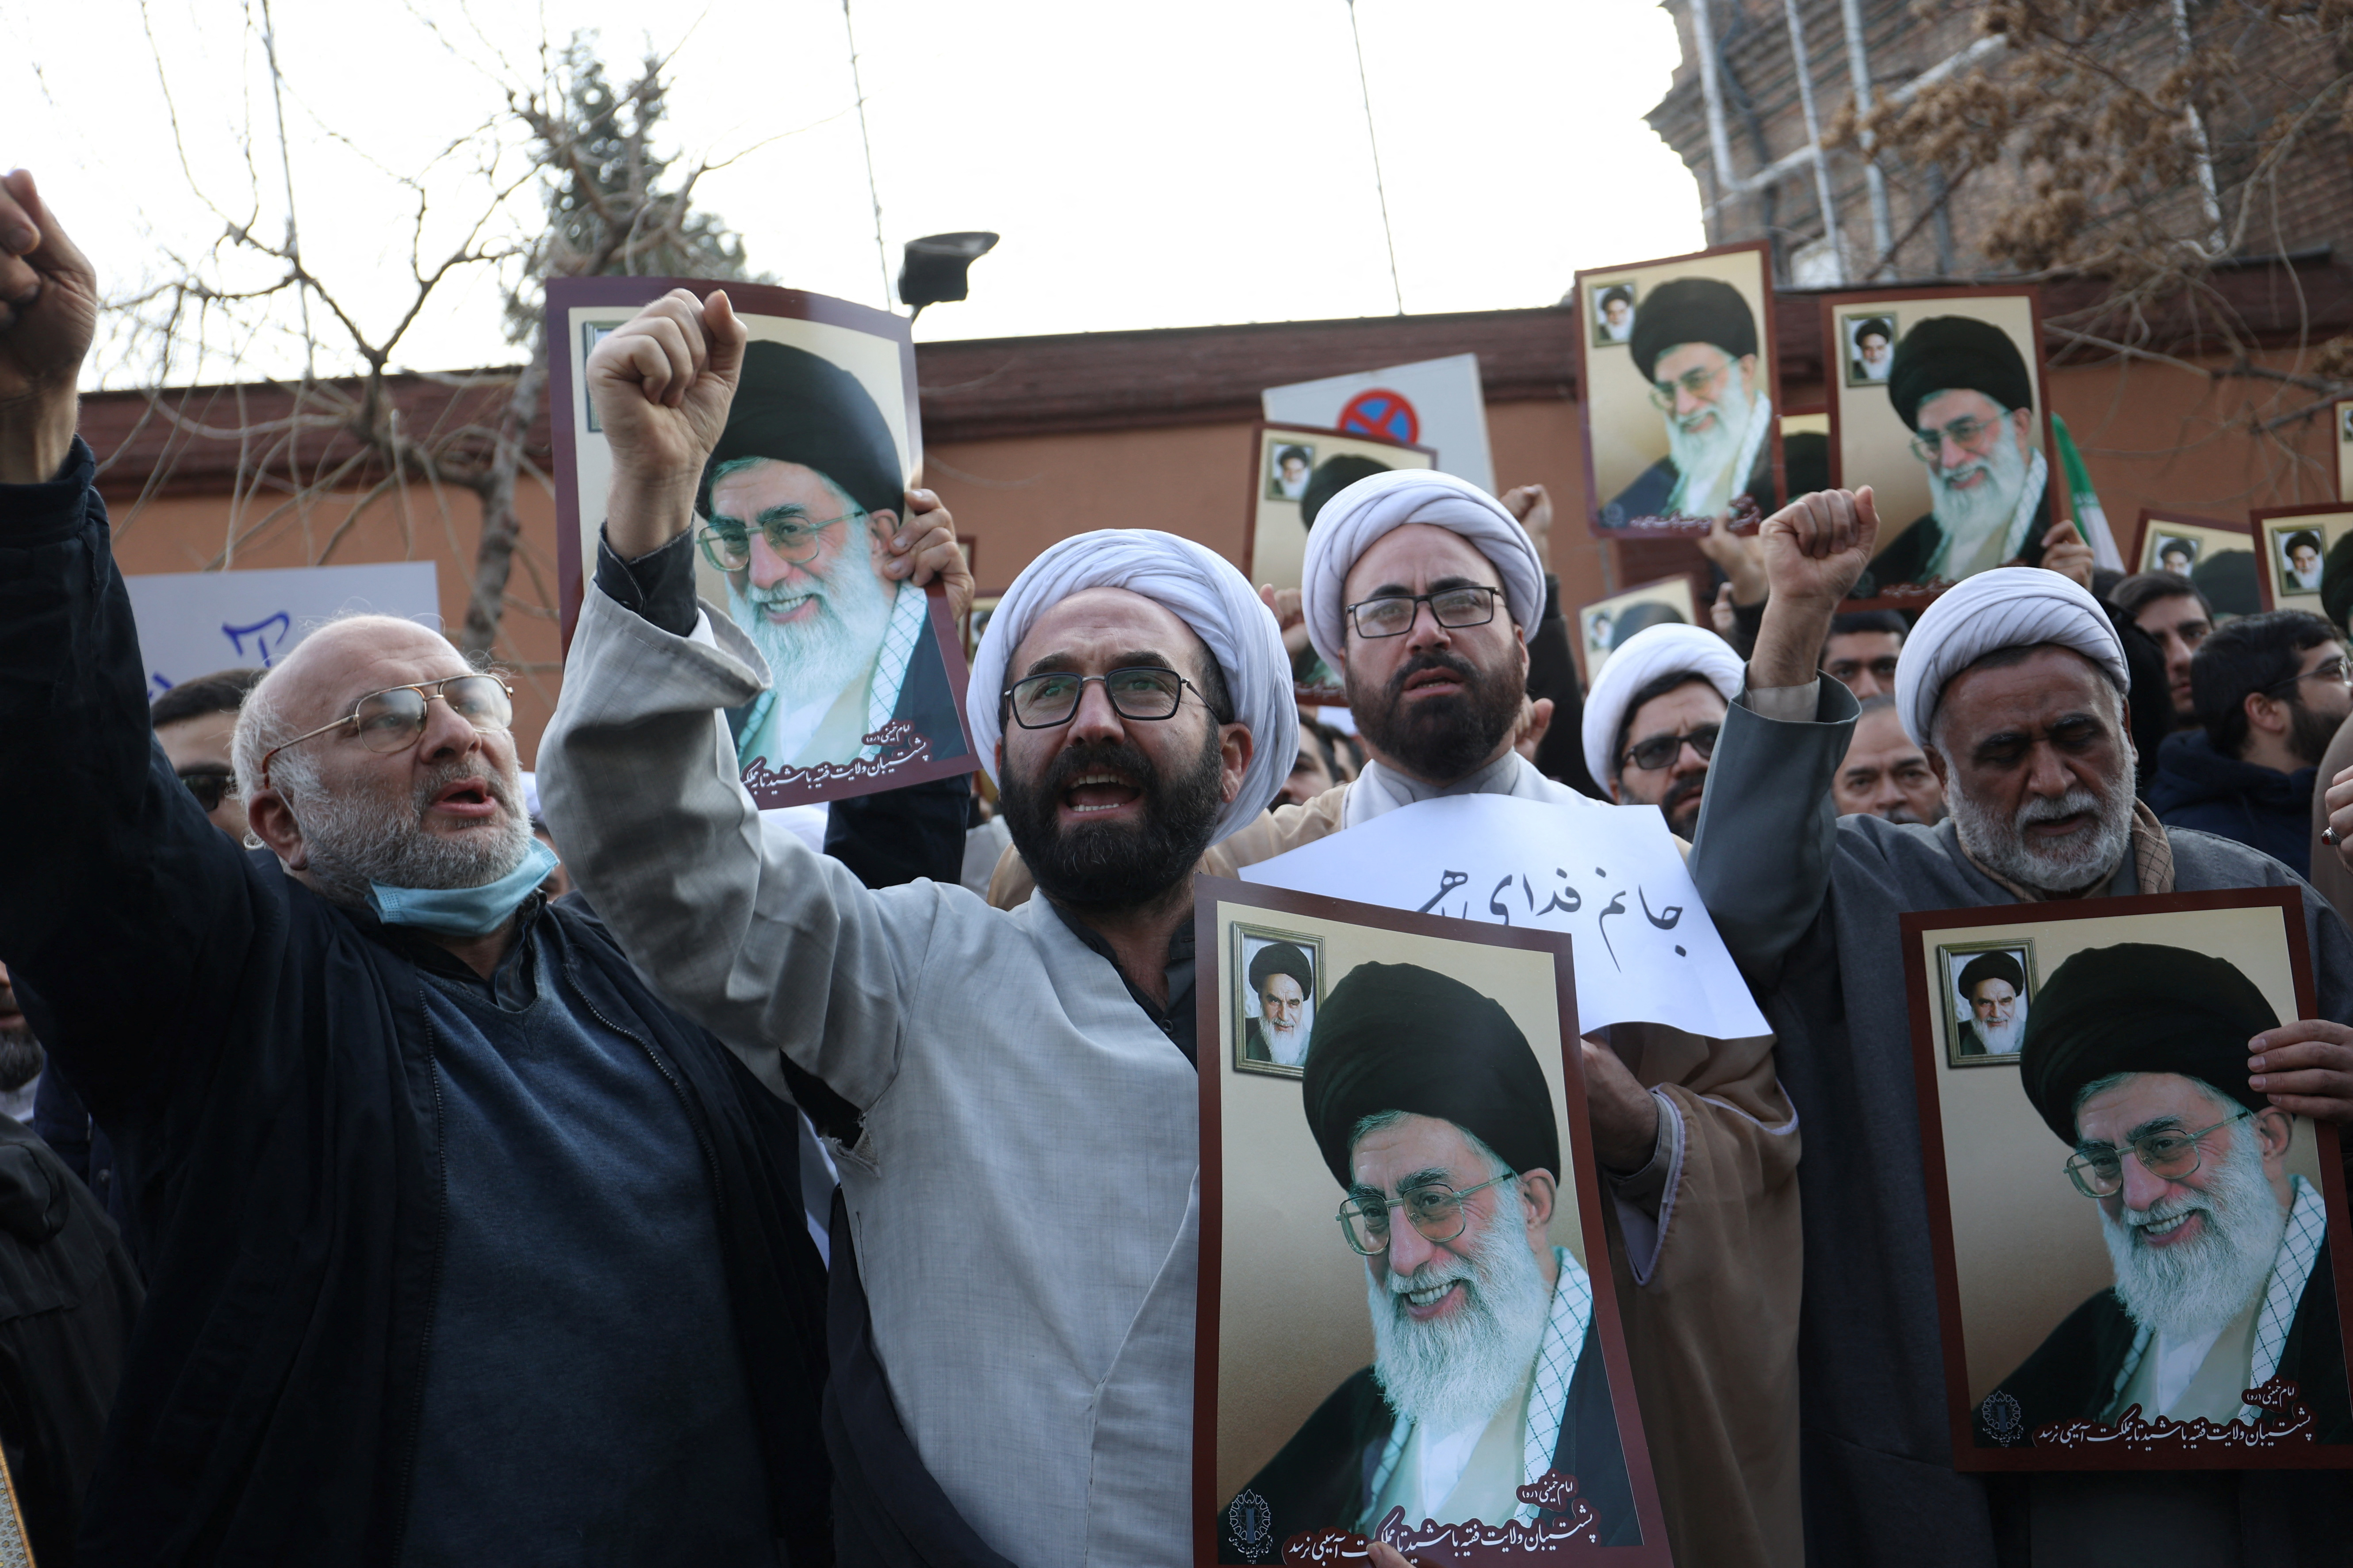 Las fuerzas represoras de Irán amenazaron a Charlie Hebdo con ataques similares a los ocurridos a Salman Rushdie. (REUTERS)